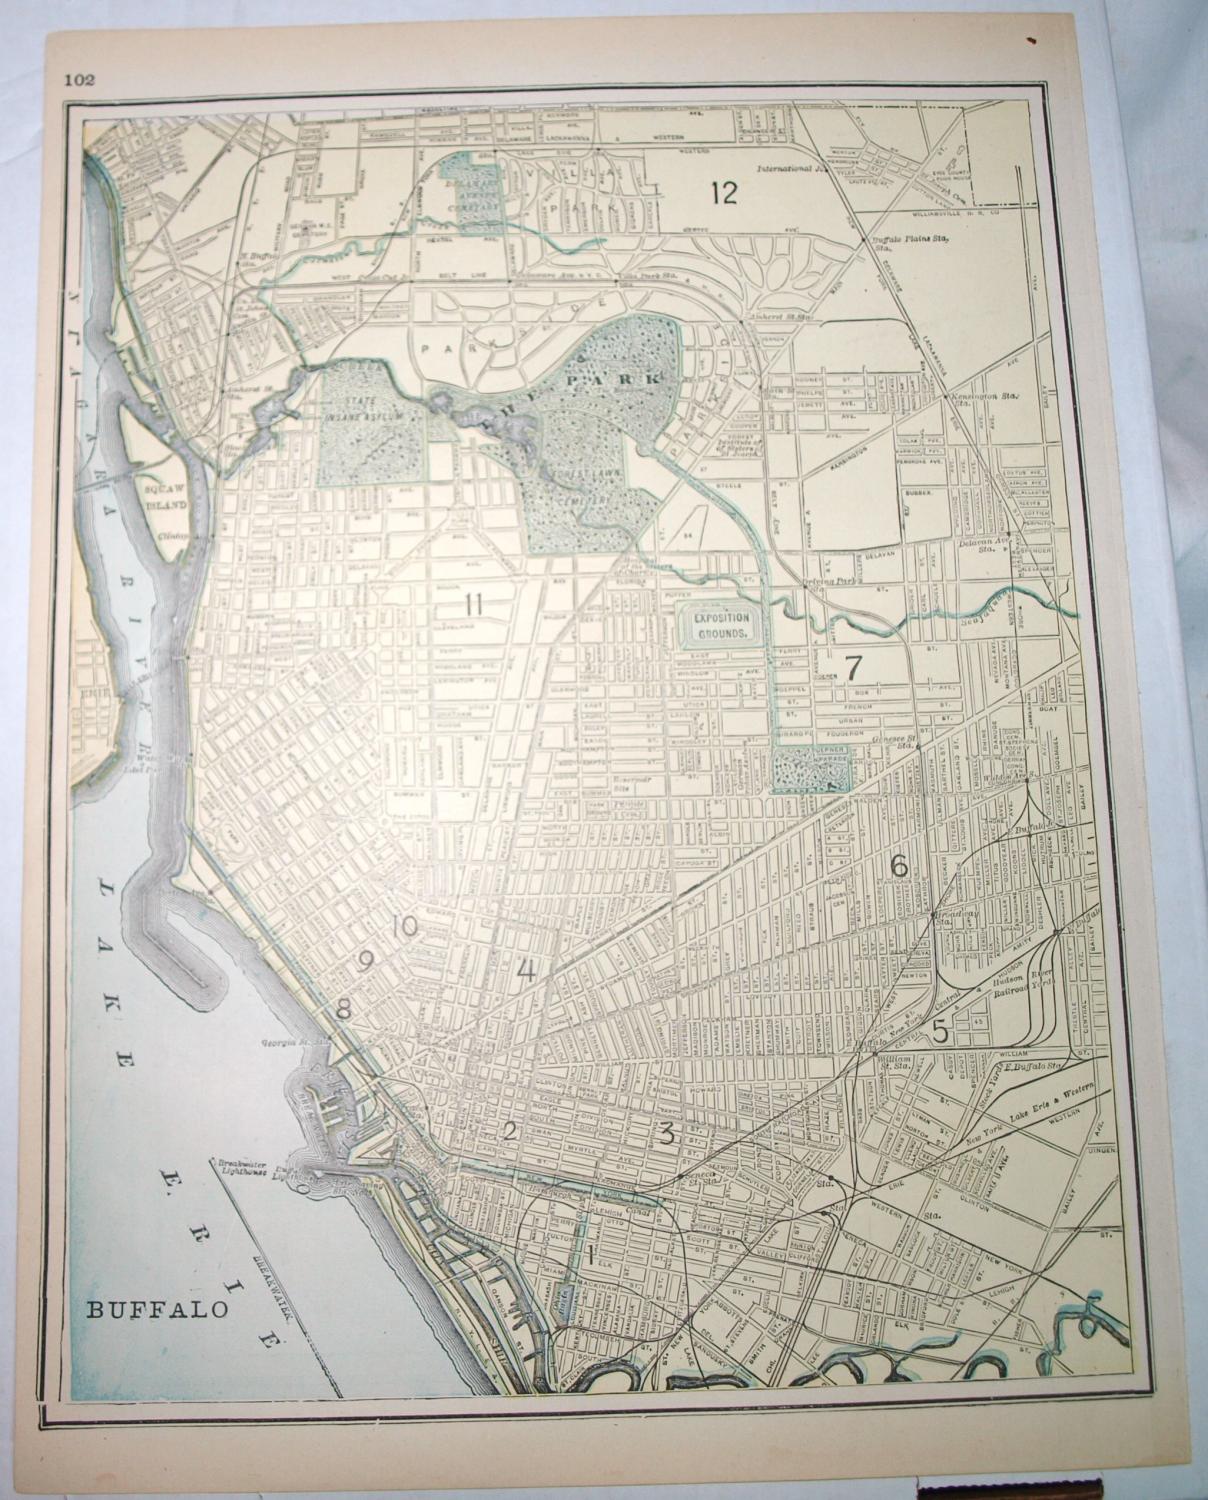 Iliffs Imperial Atlas Of The World Street Map Of Buffalo Ny By John W